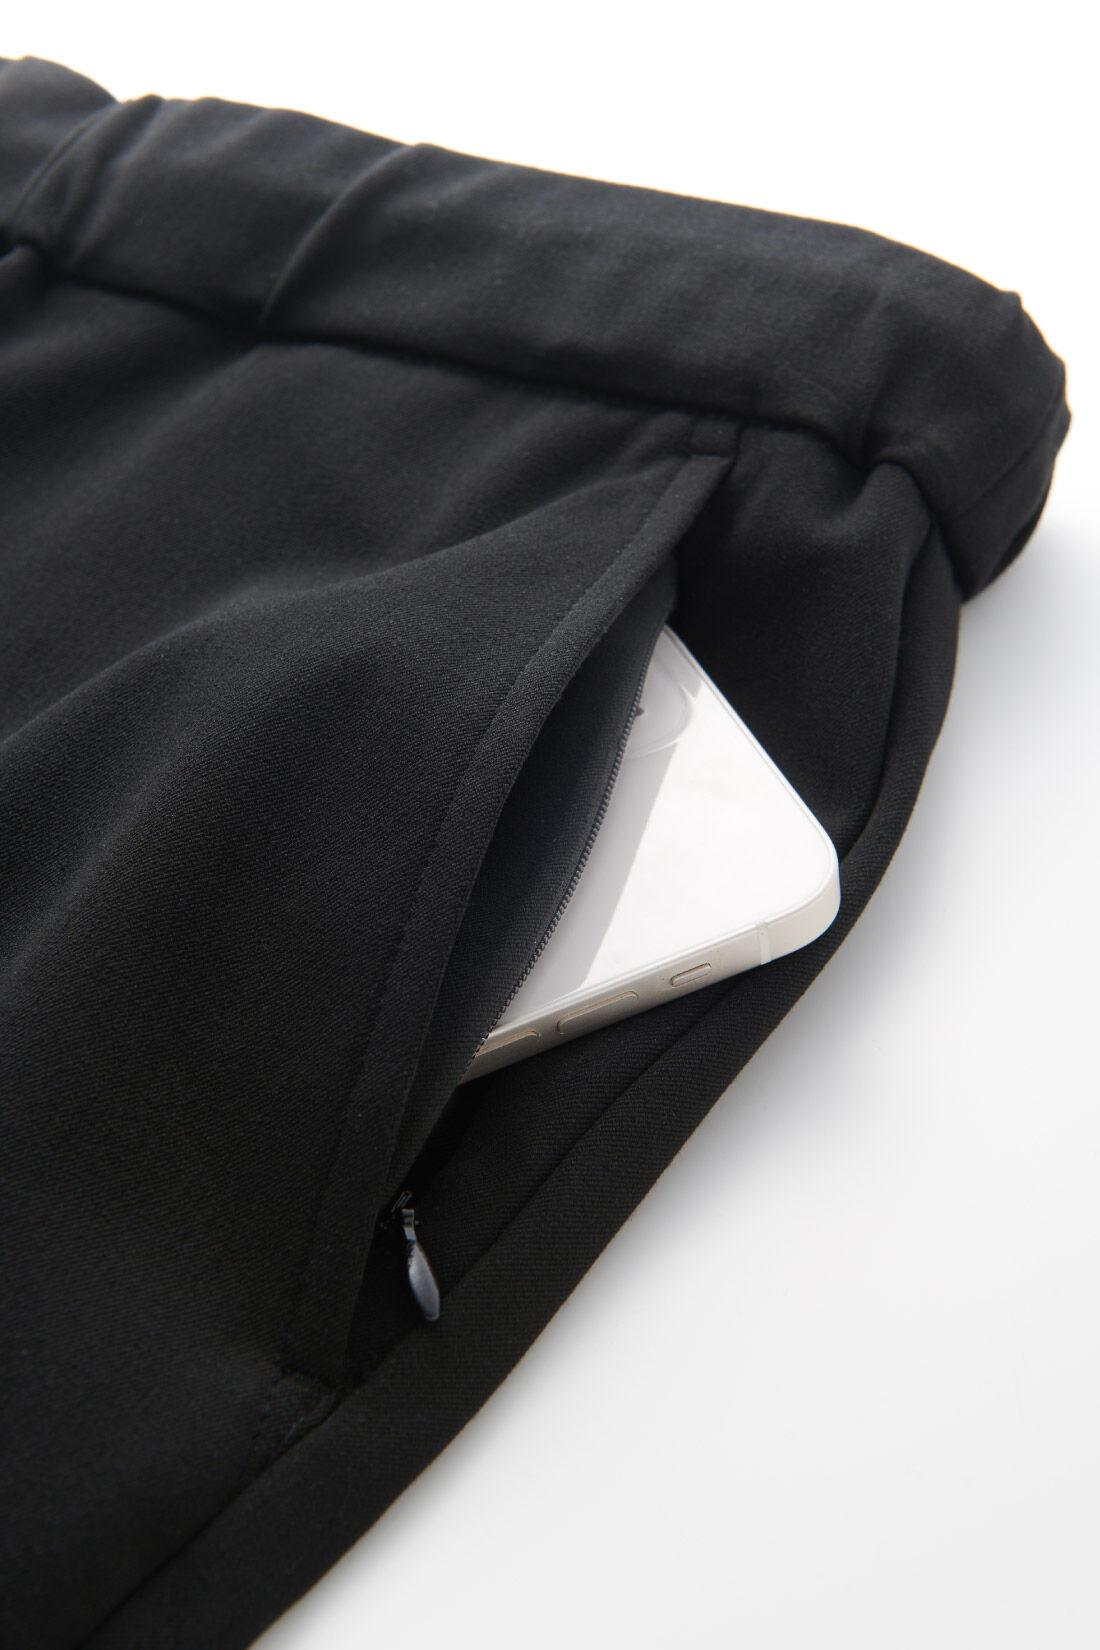 DRECO by IEDIT|【3～10日でお届け】IEDIT[イディット]　いつまでもキレイな黒が続く 純黒プルオンスマートテーパードメンズパンツ〈ブラック〉|フロントサイドの左側ポケットには、スマホを入れるのにぴったりなファスナー仕様の隠しポケット付き。